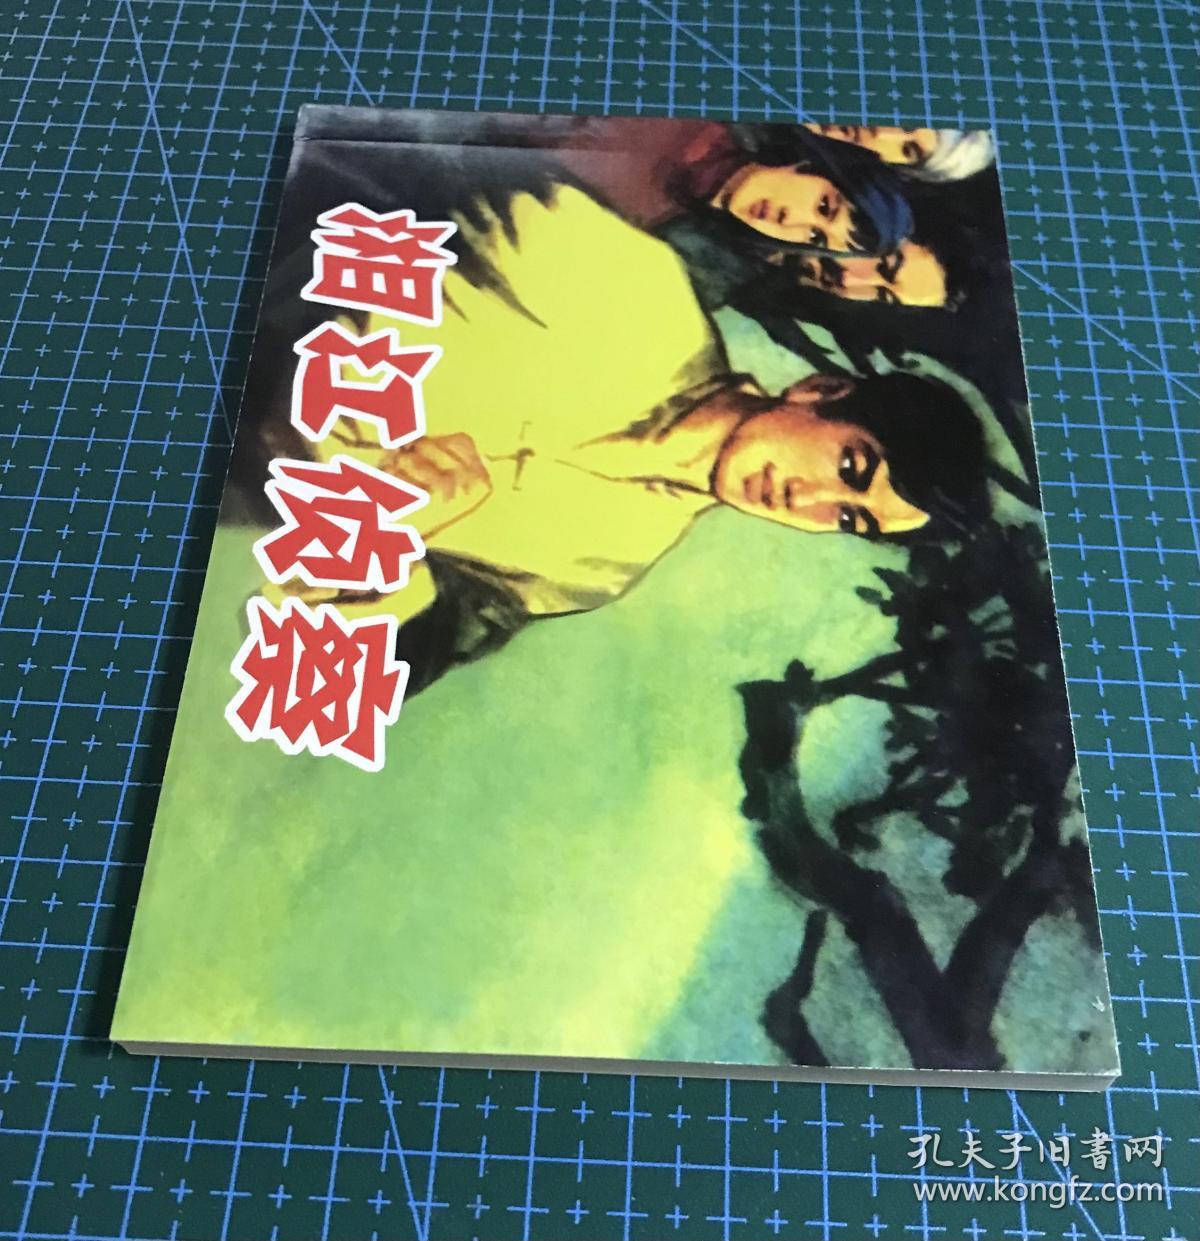 红色经典连环画《湘江侦察》名家 钱贵荪绘画，连环画出版社。